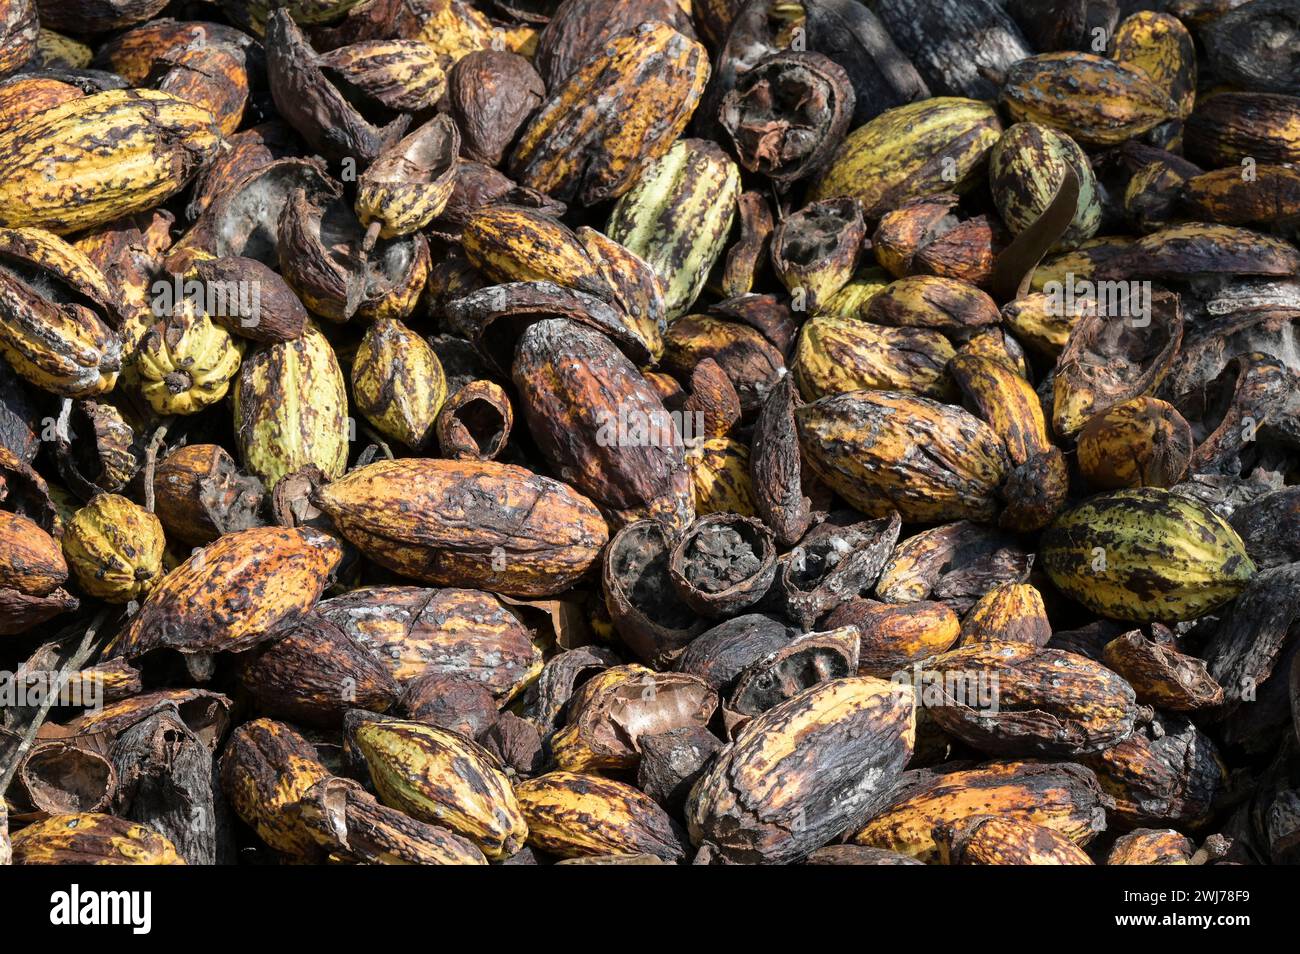 GHANA, regione orientale, Nkawkaw, allevamento di cacao, raccolta e trasformazione, cialde di cacao vuote / GHANA, Kakao Anbau, Ernte und Verarbeitung, leere Kakao Hülsen Foto Stock